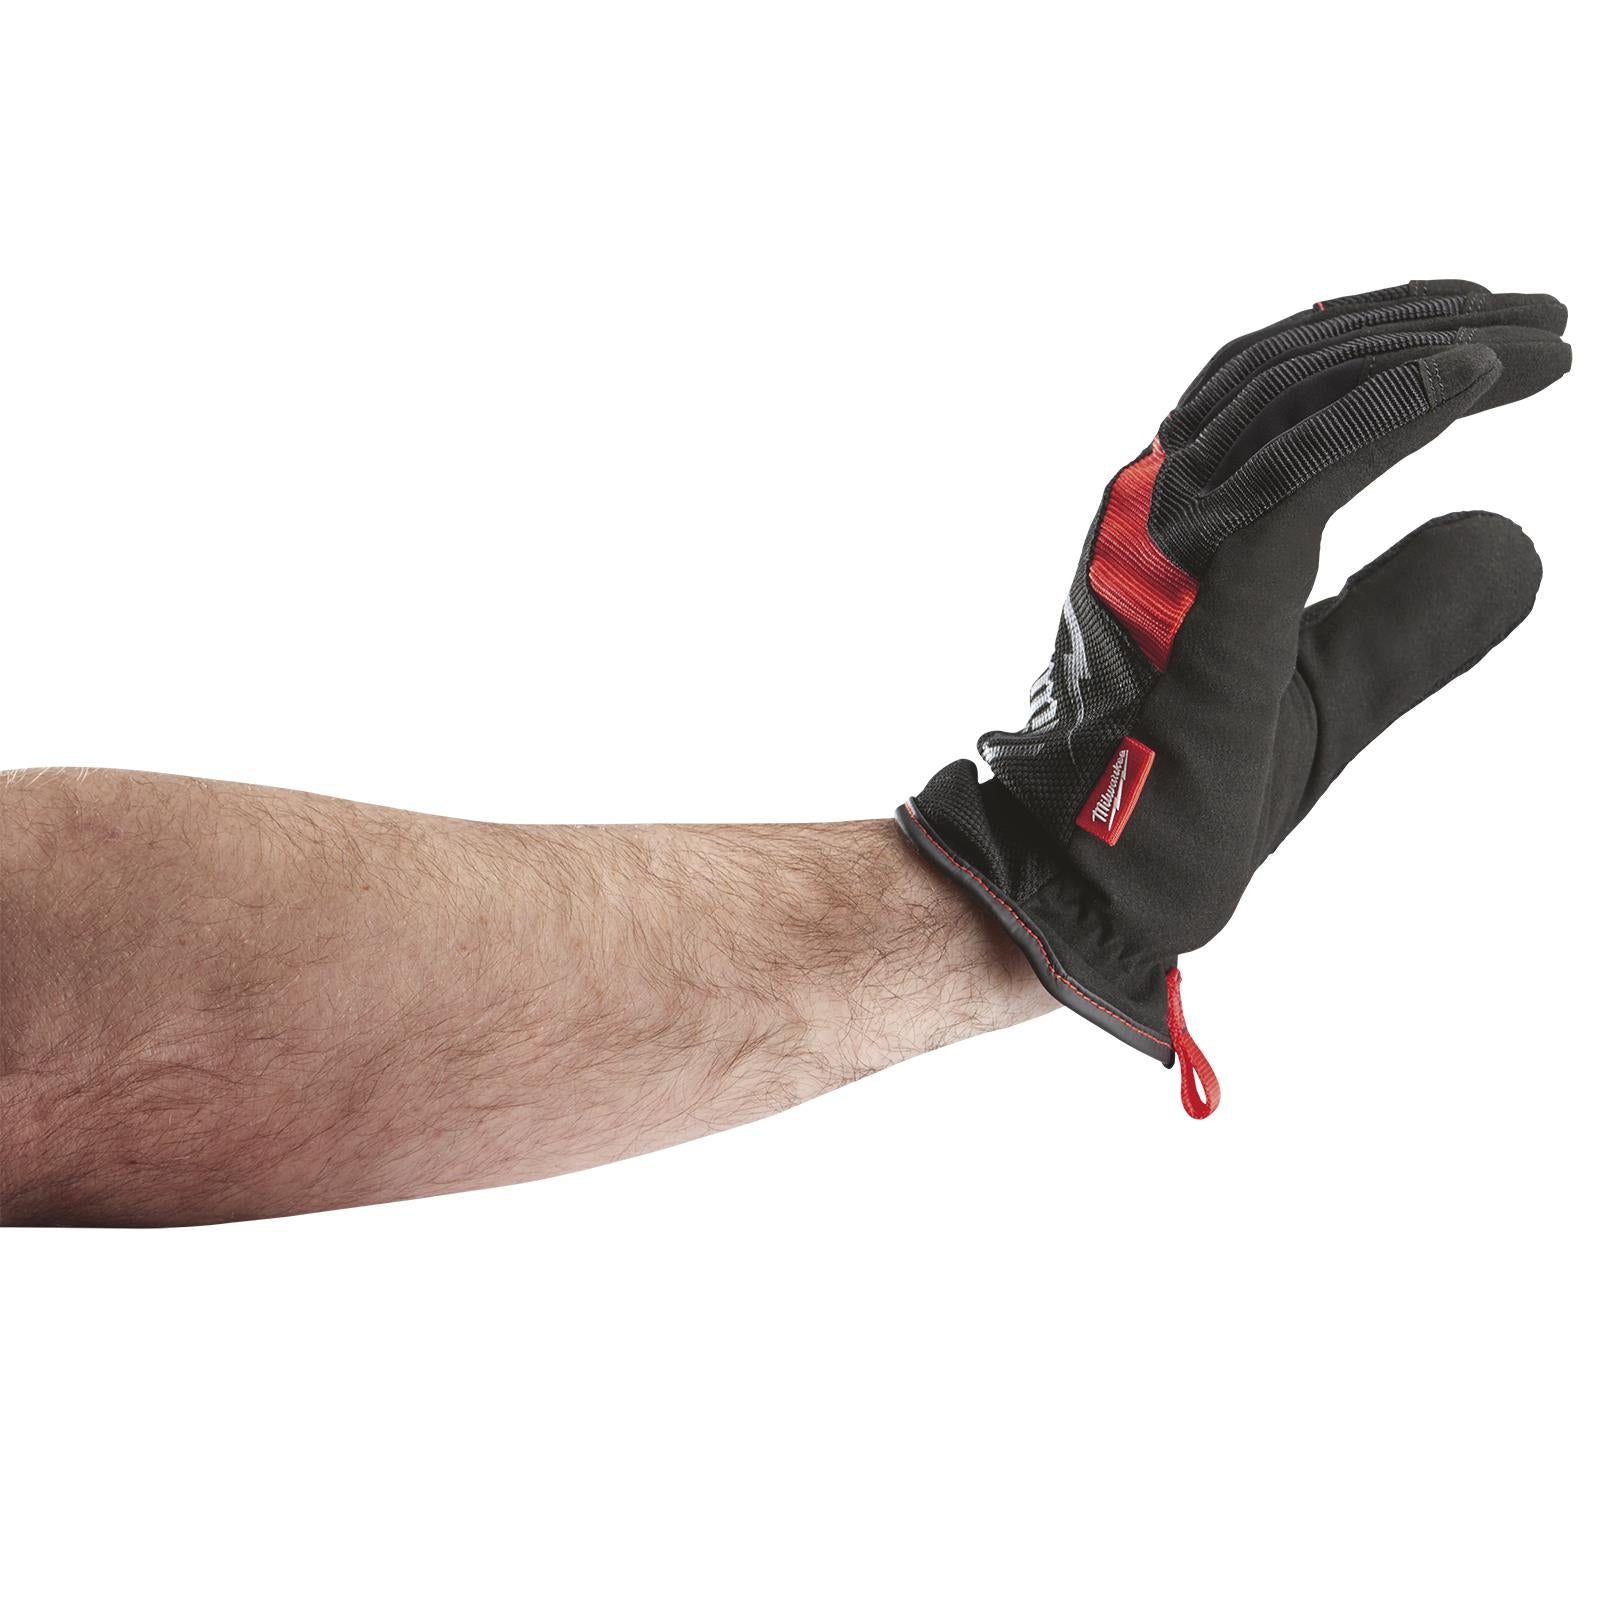 Milwaukee Safety Gloves Free Flex Work Glove Size 8 / M Medium